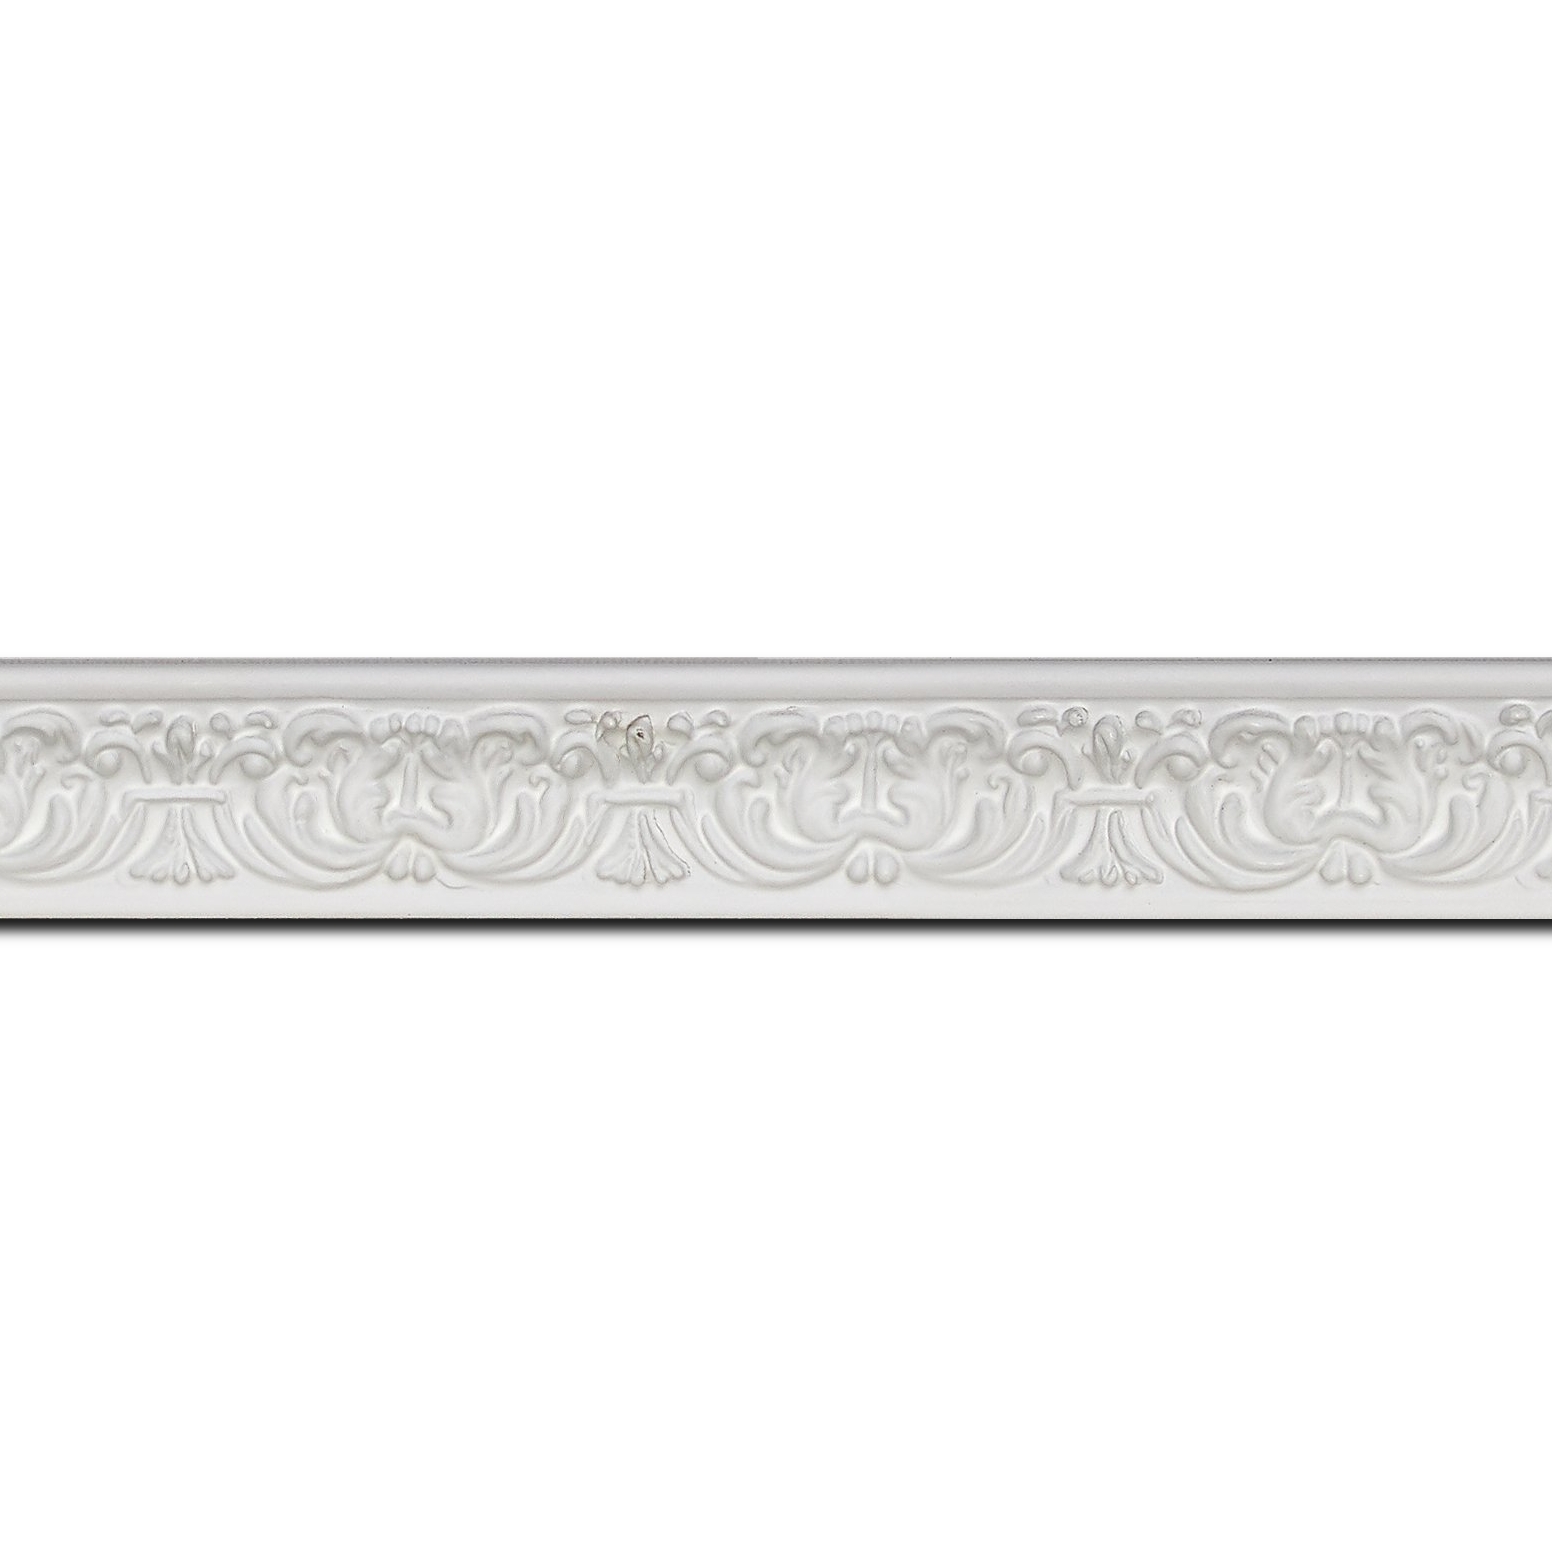 Baguette longueur 1.40m bois profil incurvé largeur 2.6cm couleur blanc en relief sur fond blanc